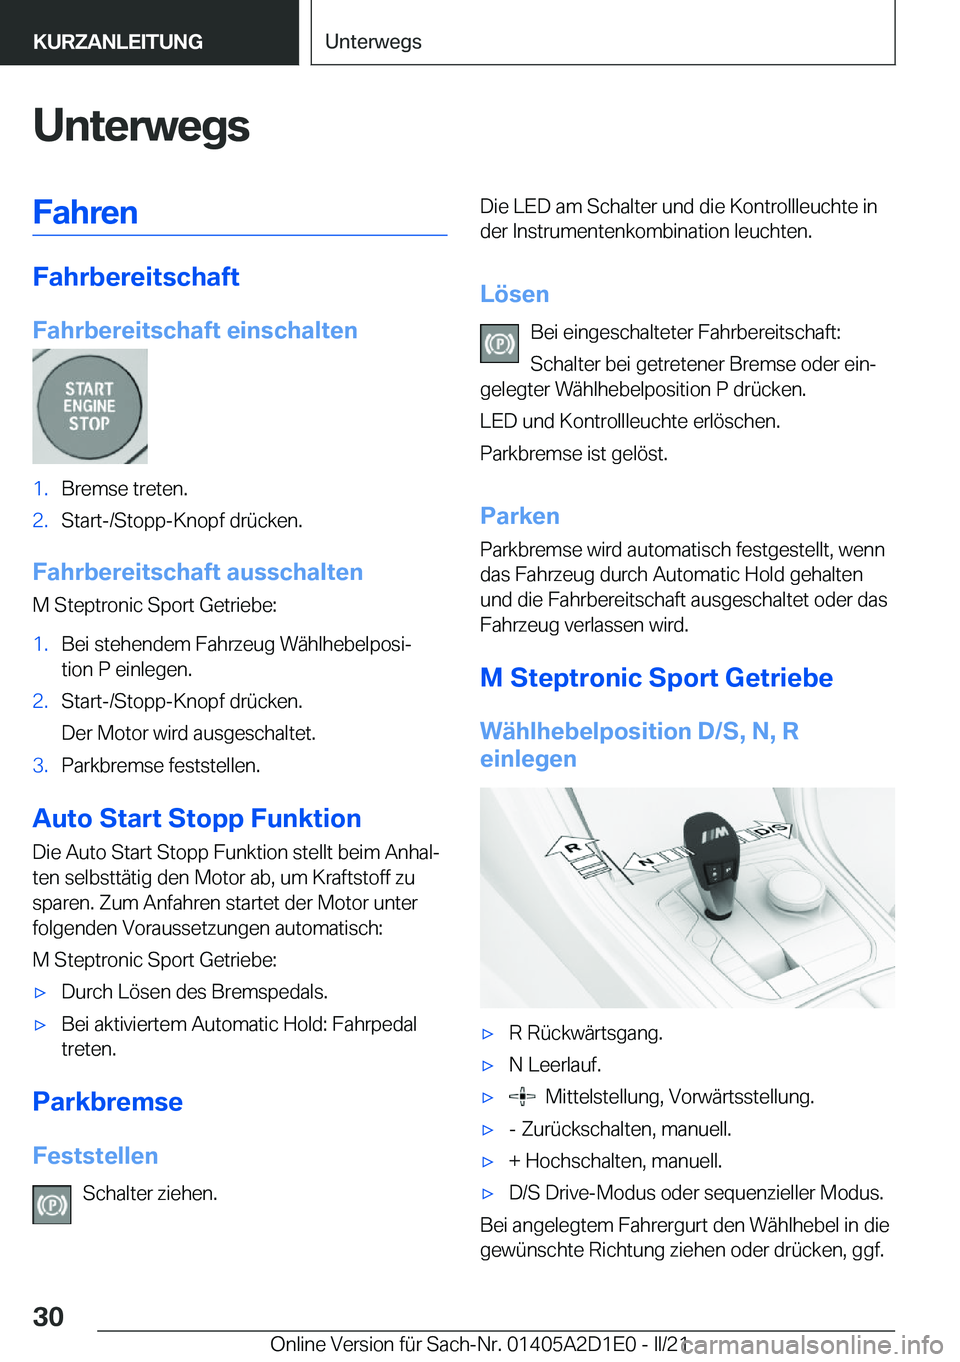 BMW X6 M 2021  Betriebsanleitungen (in German) �U�n�t�e�r�w�e�g�s�F�a�h�r�e�n
�F�a�h�r�b�e�r�e�i�t�s�c�h�a�f�t
�F�a�h�r�b�e�r�e�i�t�s�c�h�a�f�t��e�i�n�s�c�h�a�l�t�e�n
�1�.�B�r�e�m�s�e��t�r�e�t�e�n�.�2�.�S�t�a�r�t�-�/�S�t�o�p�p�-�K�n�o�p�f��d�r�